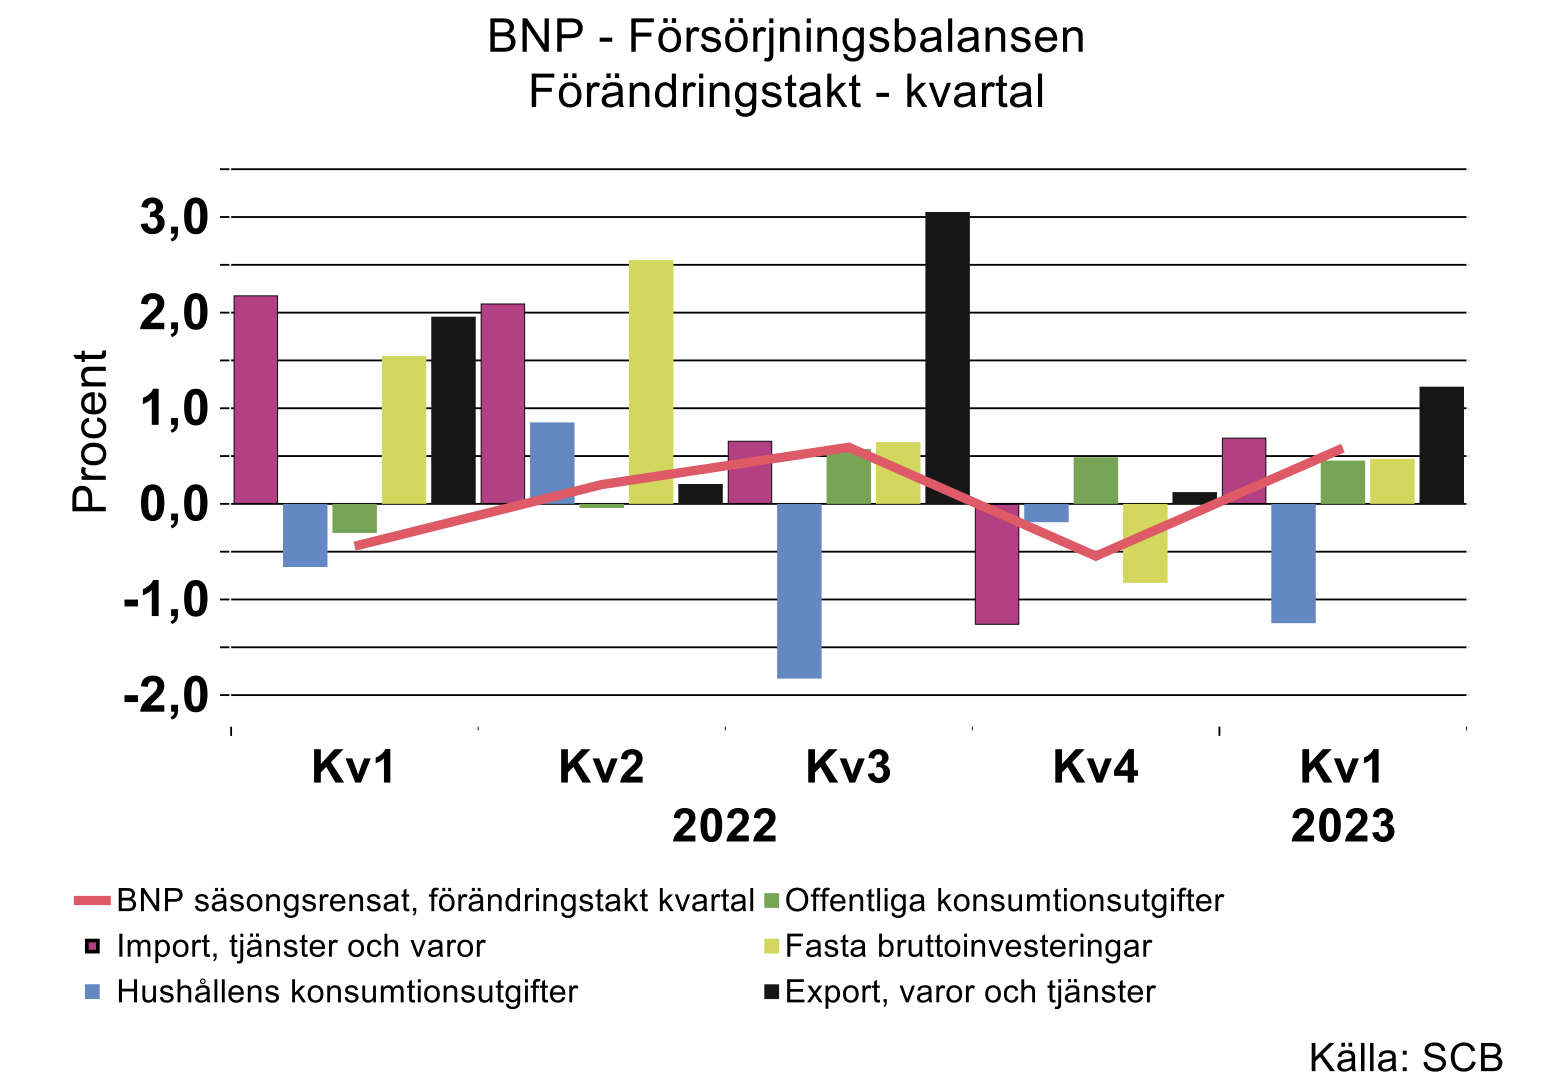 BNP - Forsorjningsbalansen